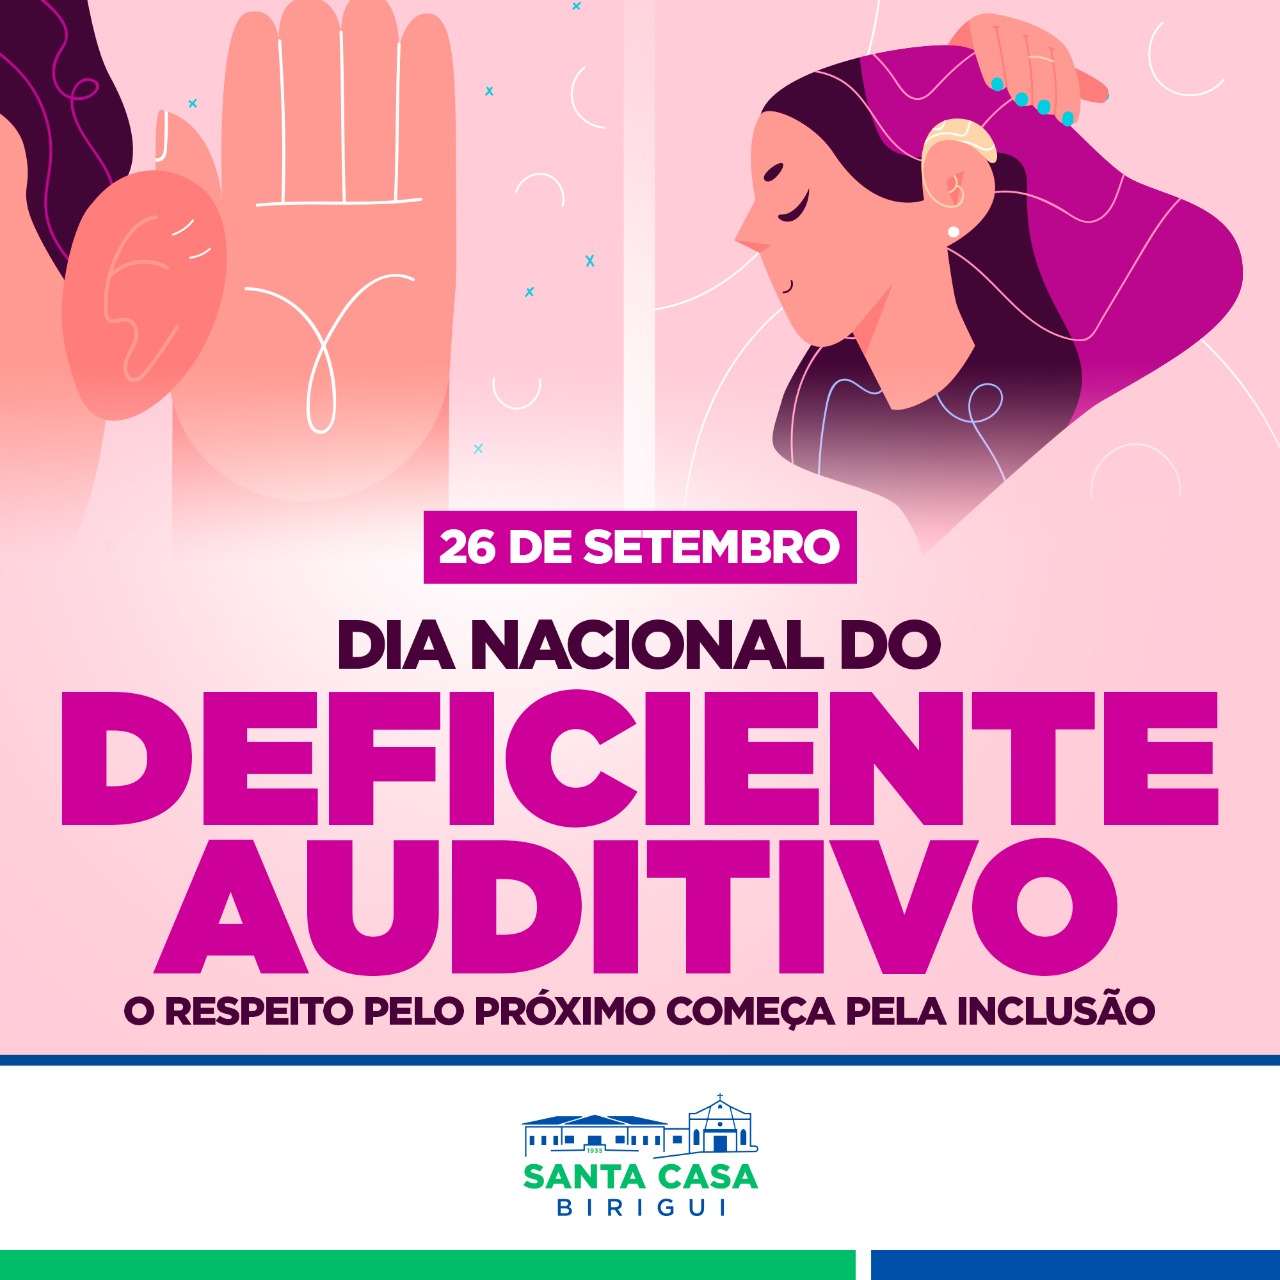 27 de setembro – Dia Nacional do Deficiente Auditivo